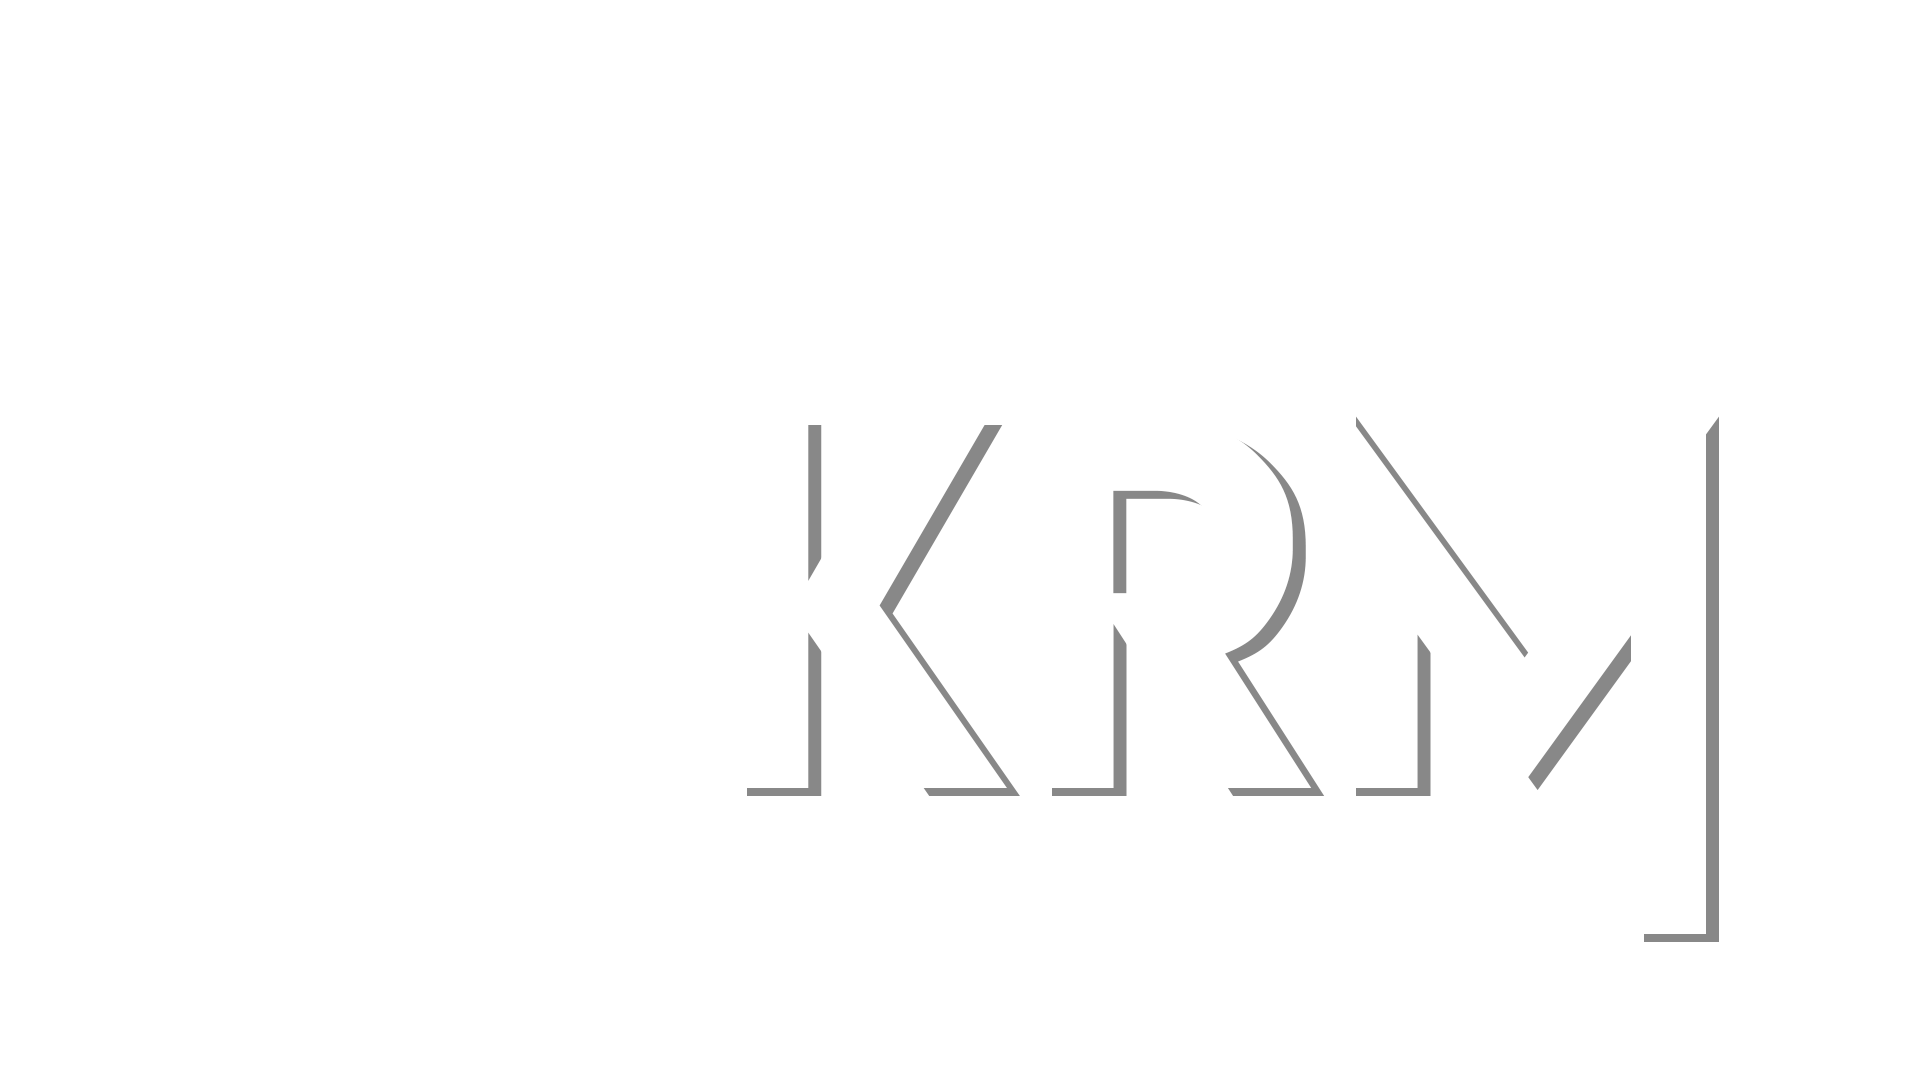 KRM Productions – KRM Productions, Audio, Video, Web Design, Graphics